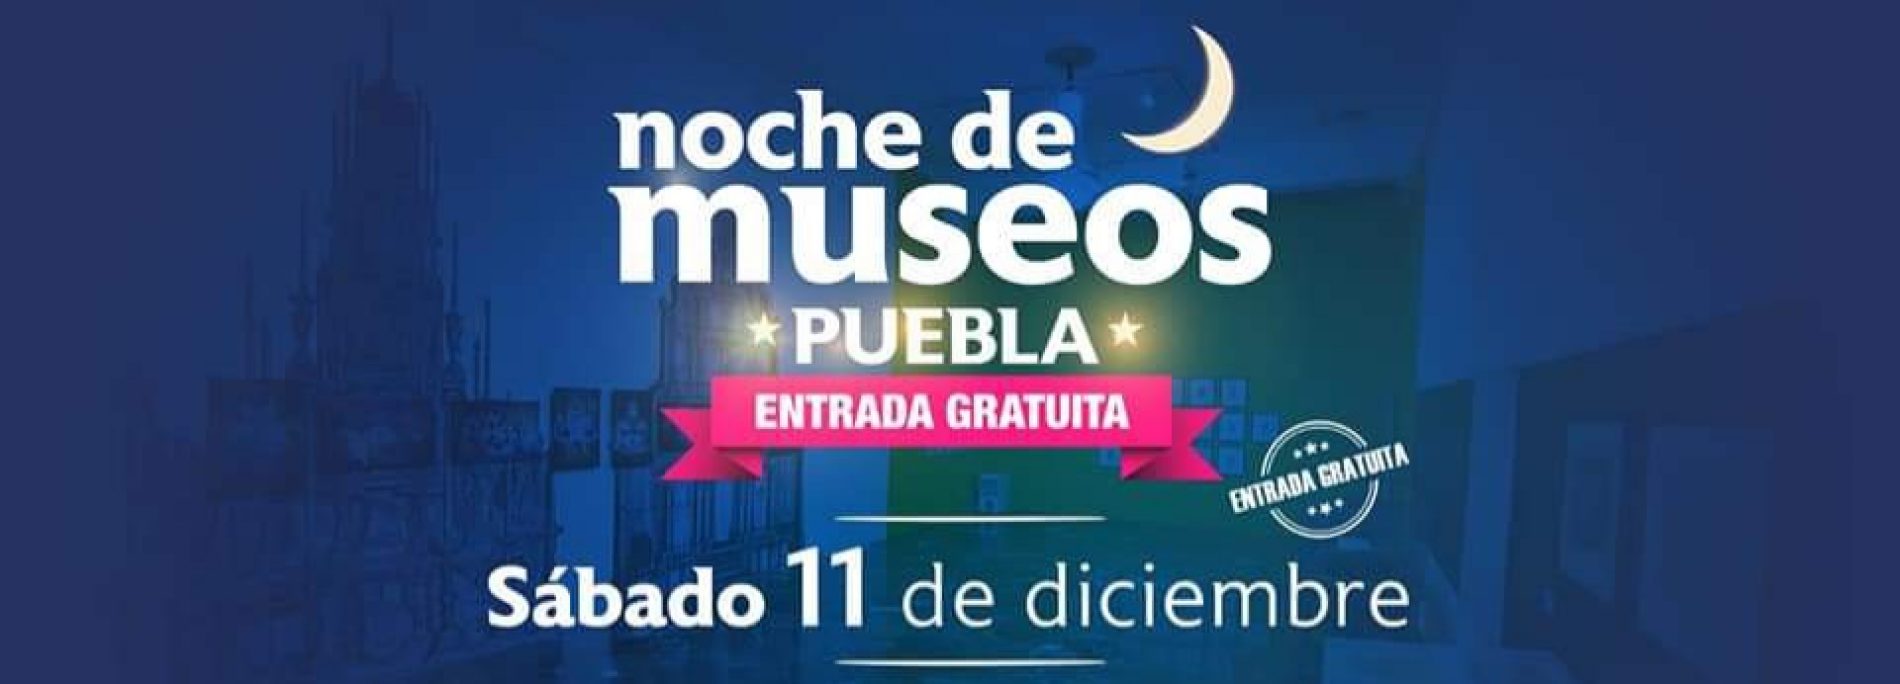 HOY ES NOCHE DE MUSEOS